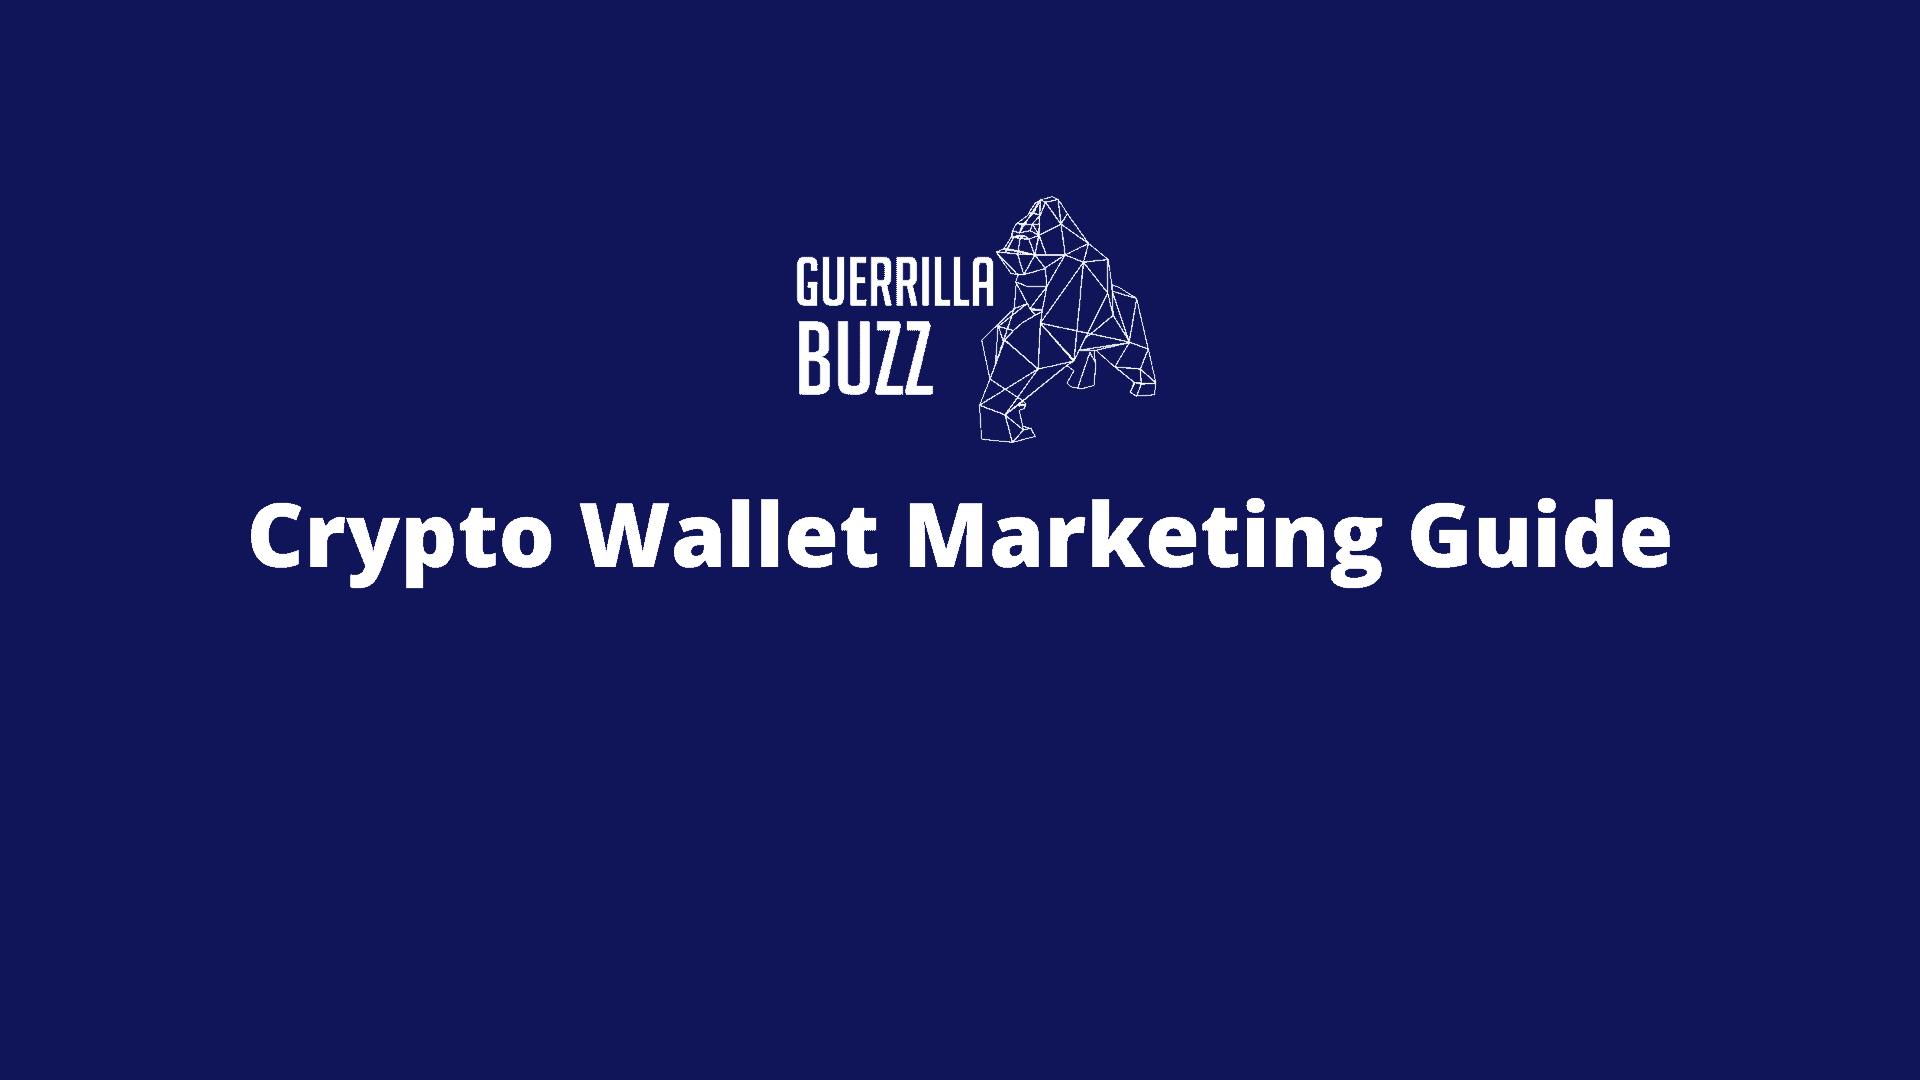 Crypto Wallet Marketing Guide GuerrillaBuzz